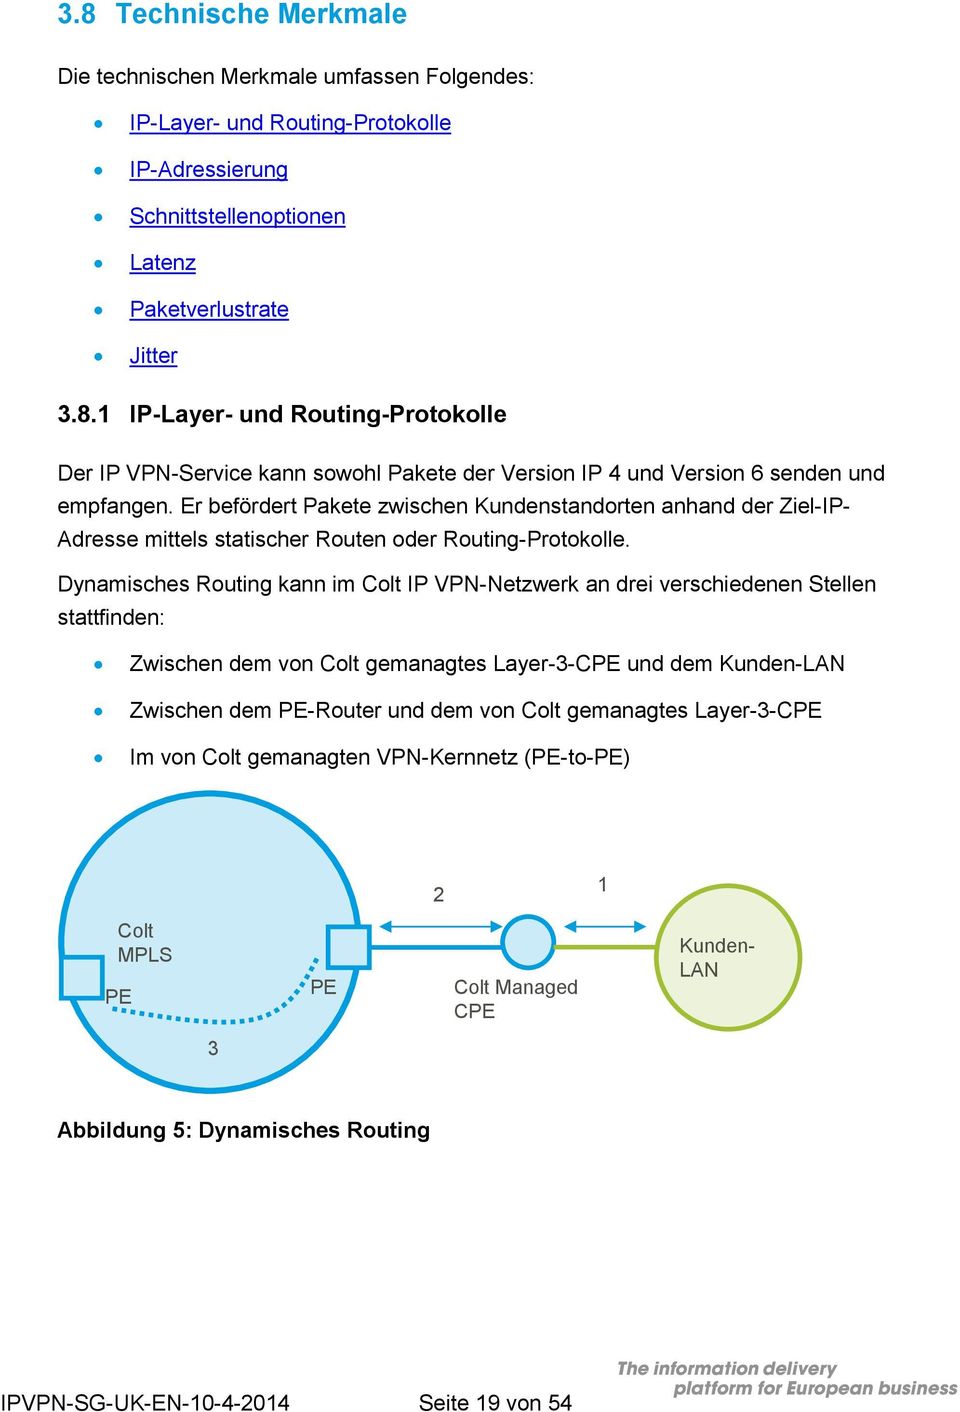 Dynamisches Routing kann im Colt IP VPN-Netzwerk an drei verschiedenen Stellen stattfinden: Zwischen dem von Colt gemanagtes Layer-3-CPE und dem Kunden-LAN Zwischen dem PE-Router und dem von Colt